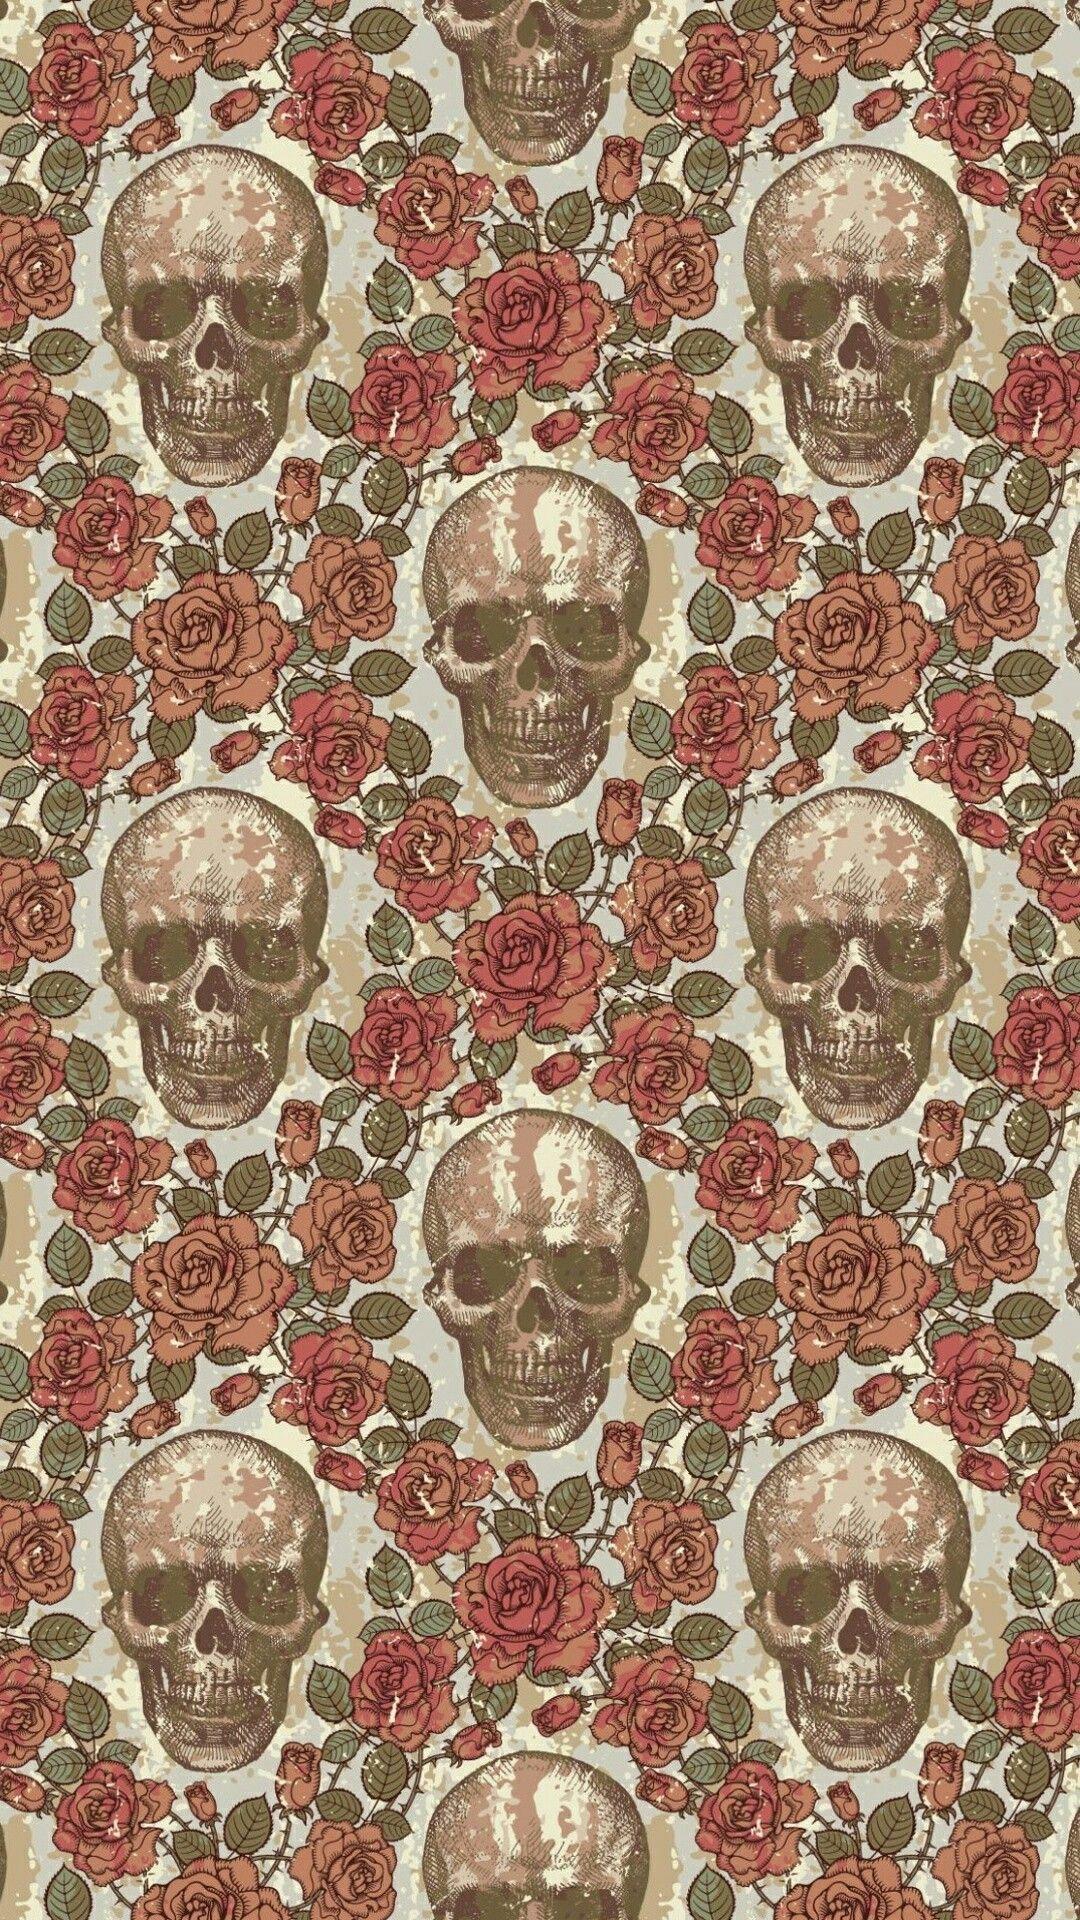 Cute Skull Wallpaper